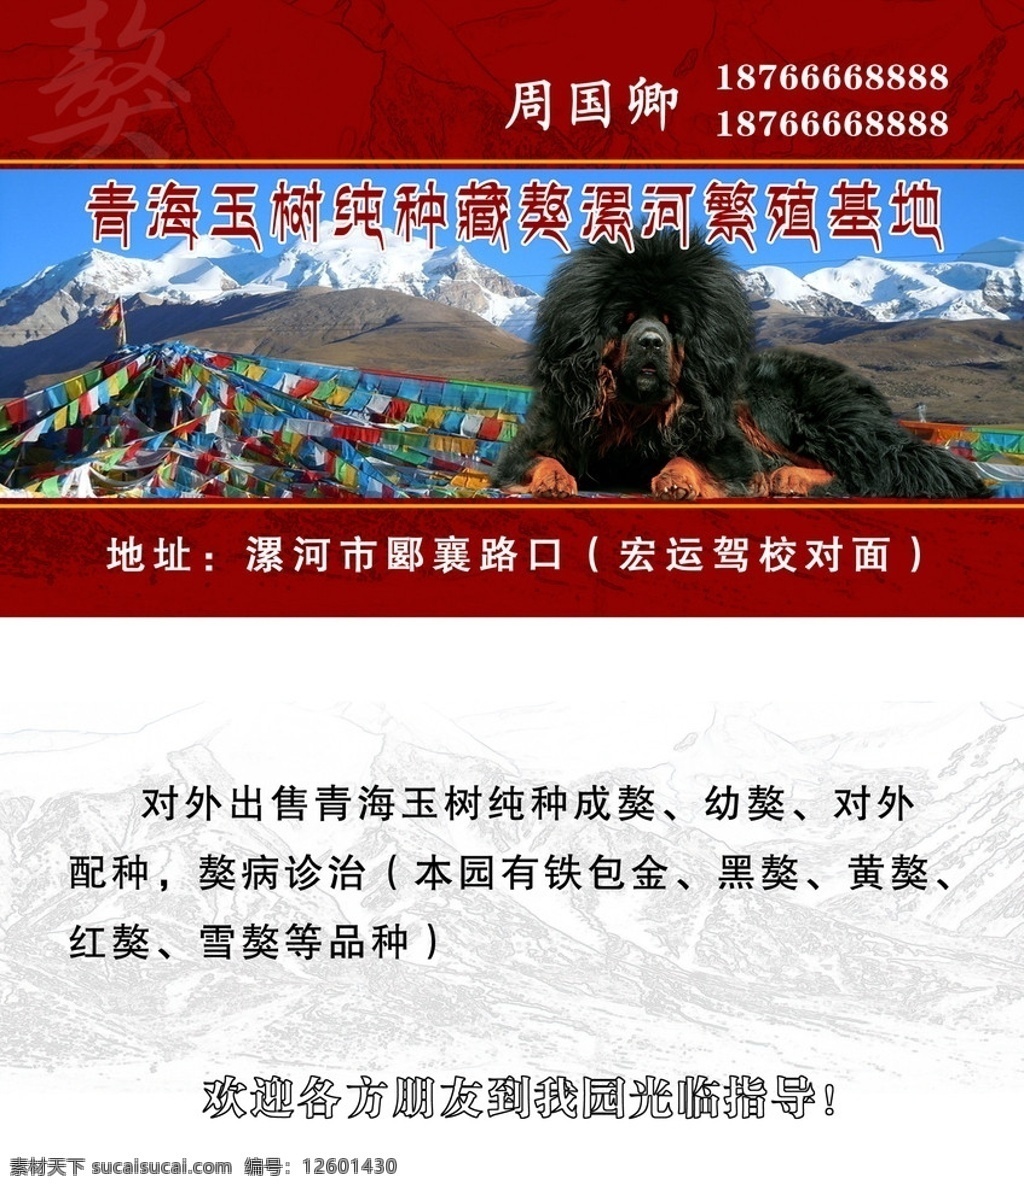 藏獒名片 藏獒 藏式 山峰 名片卡片 广告设计模板 源文件